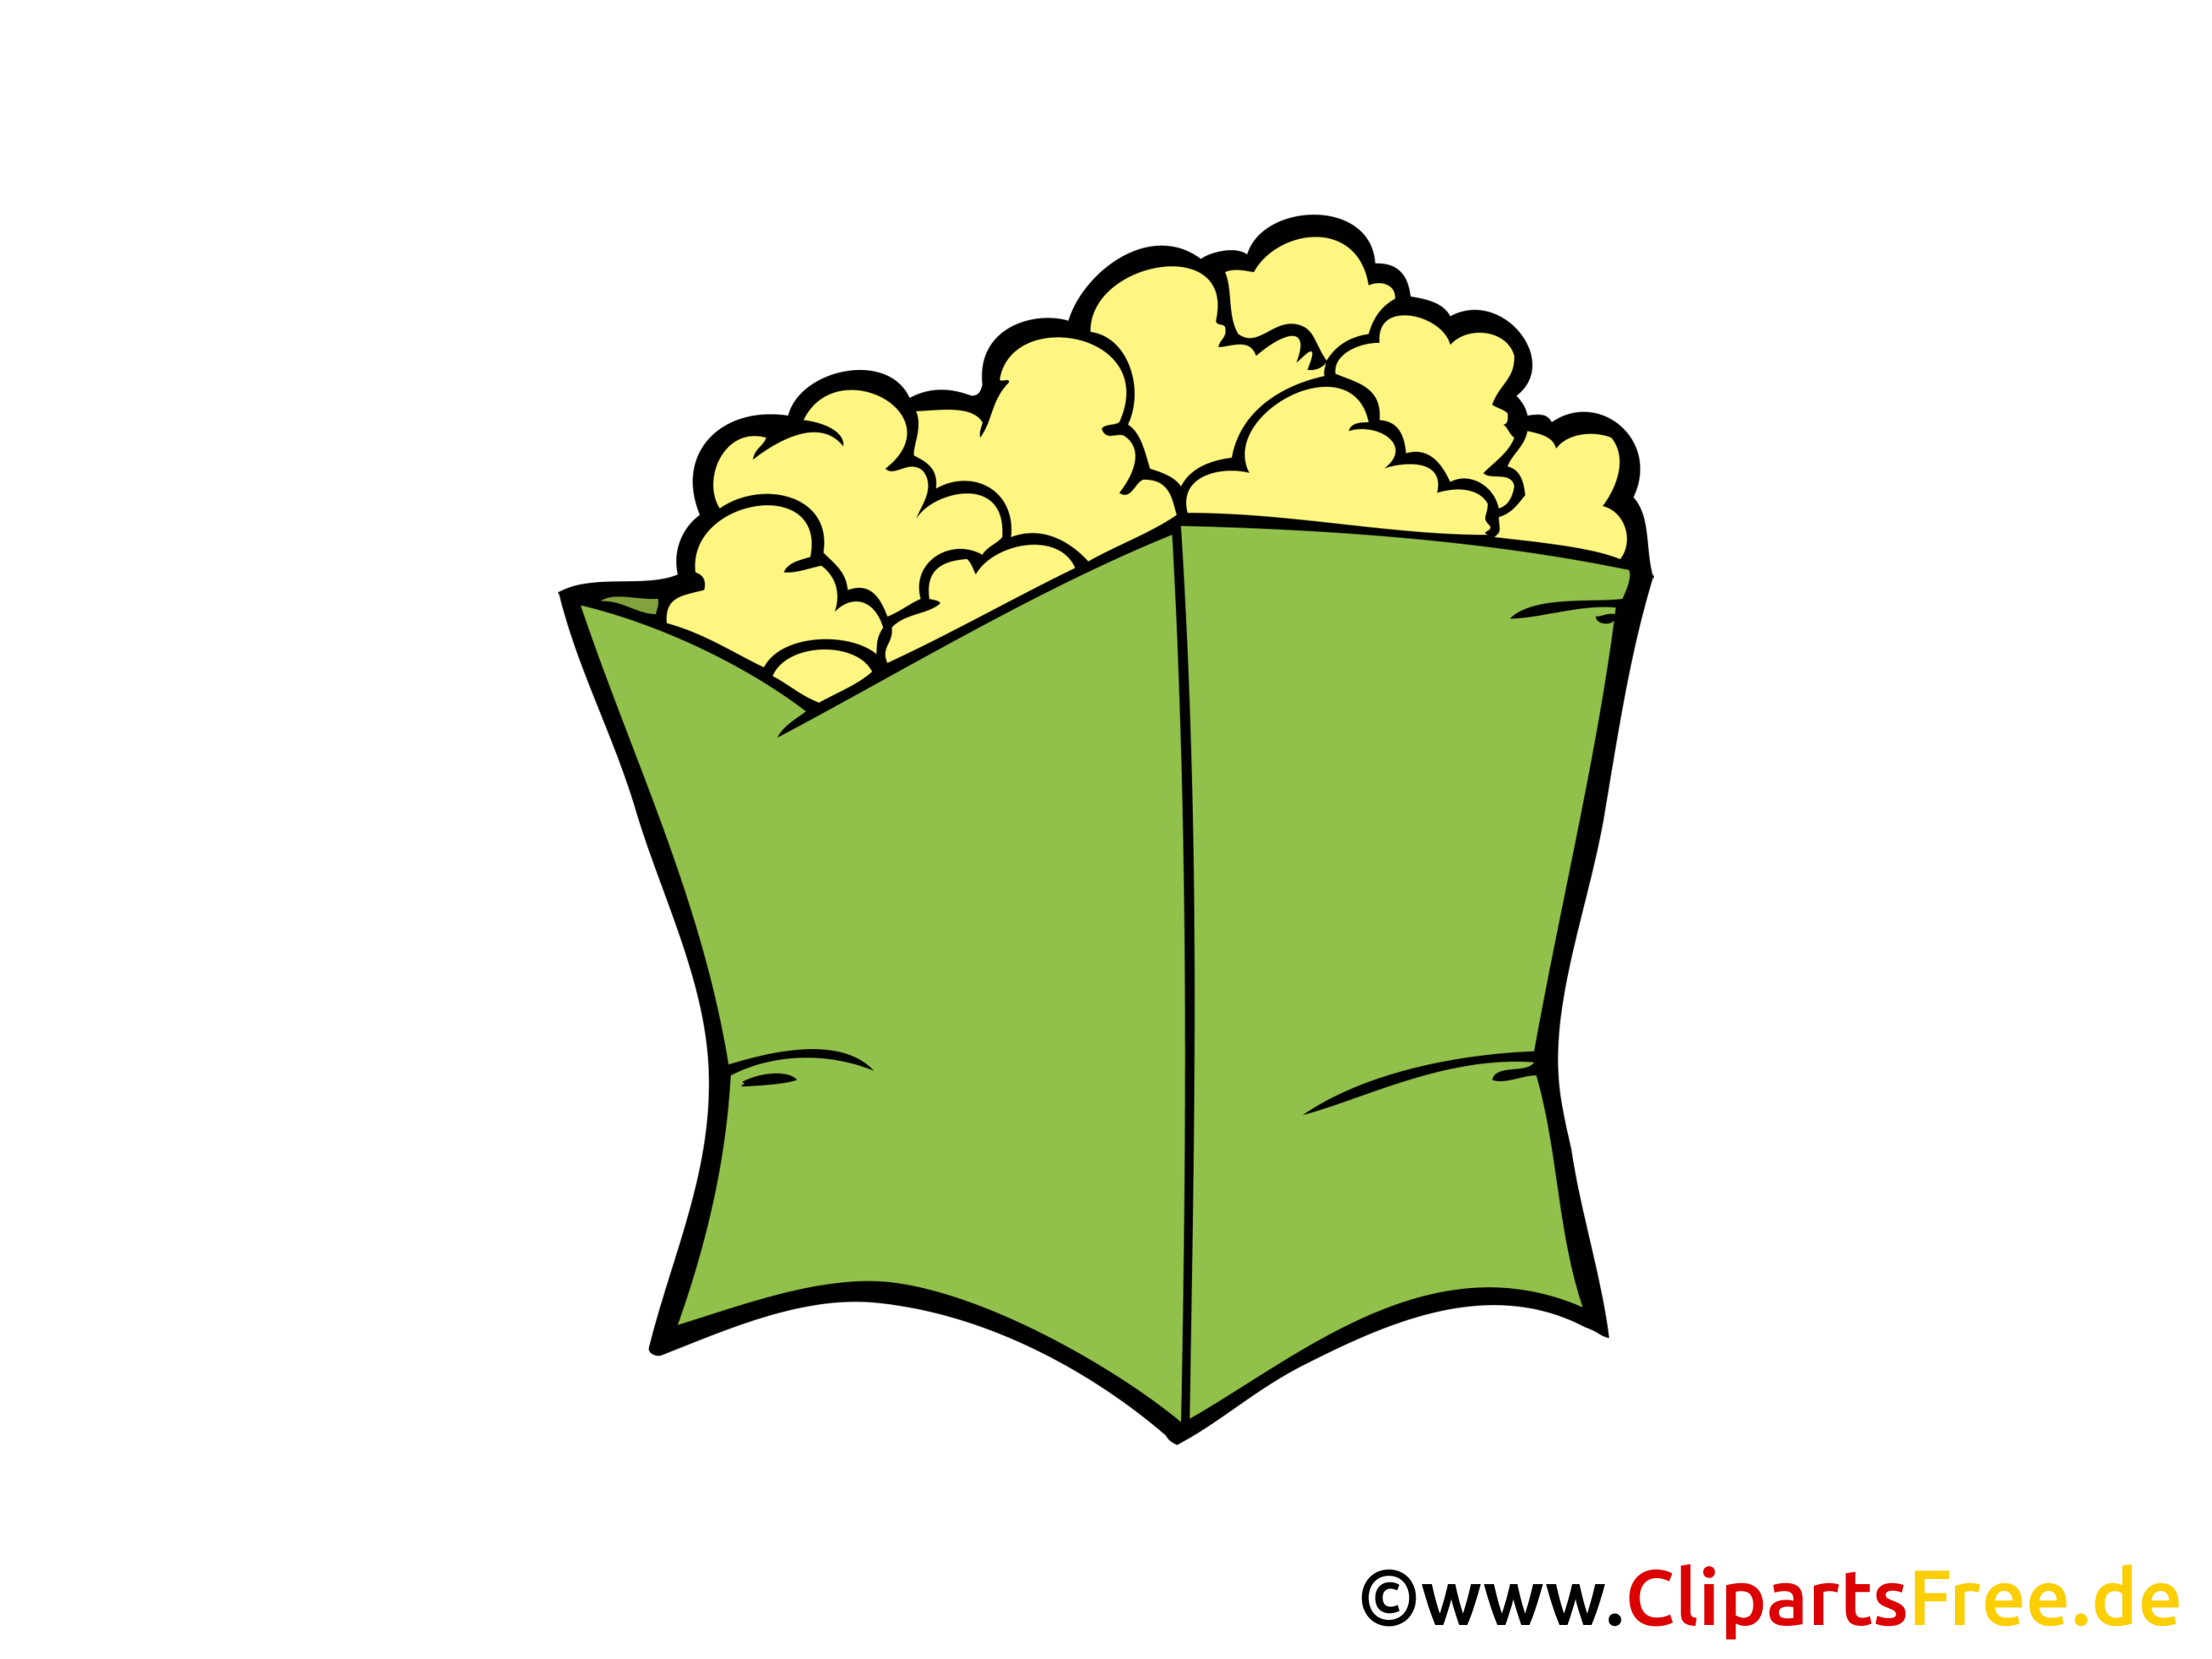 Bildtitel  Pop Corn Bild Clipart Illustration Grafik Zeichnung